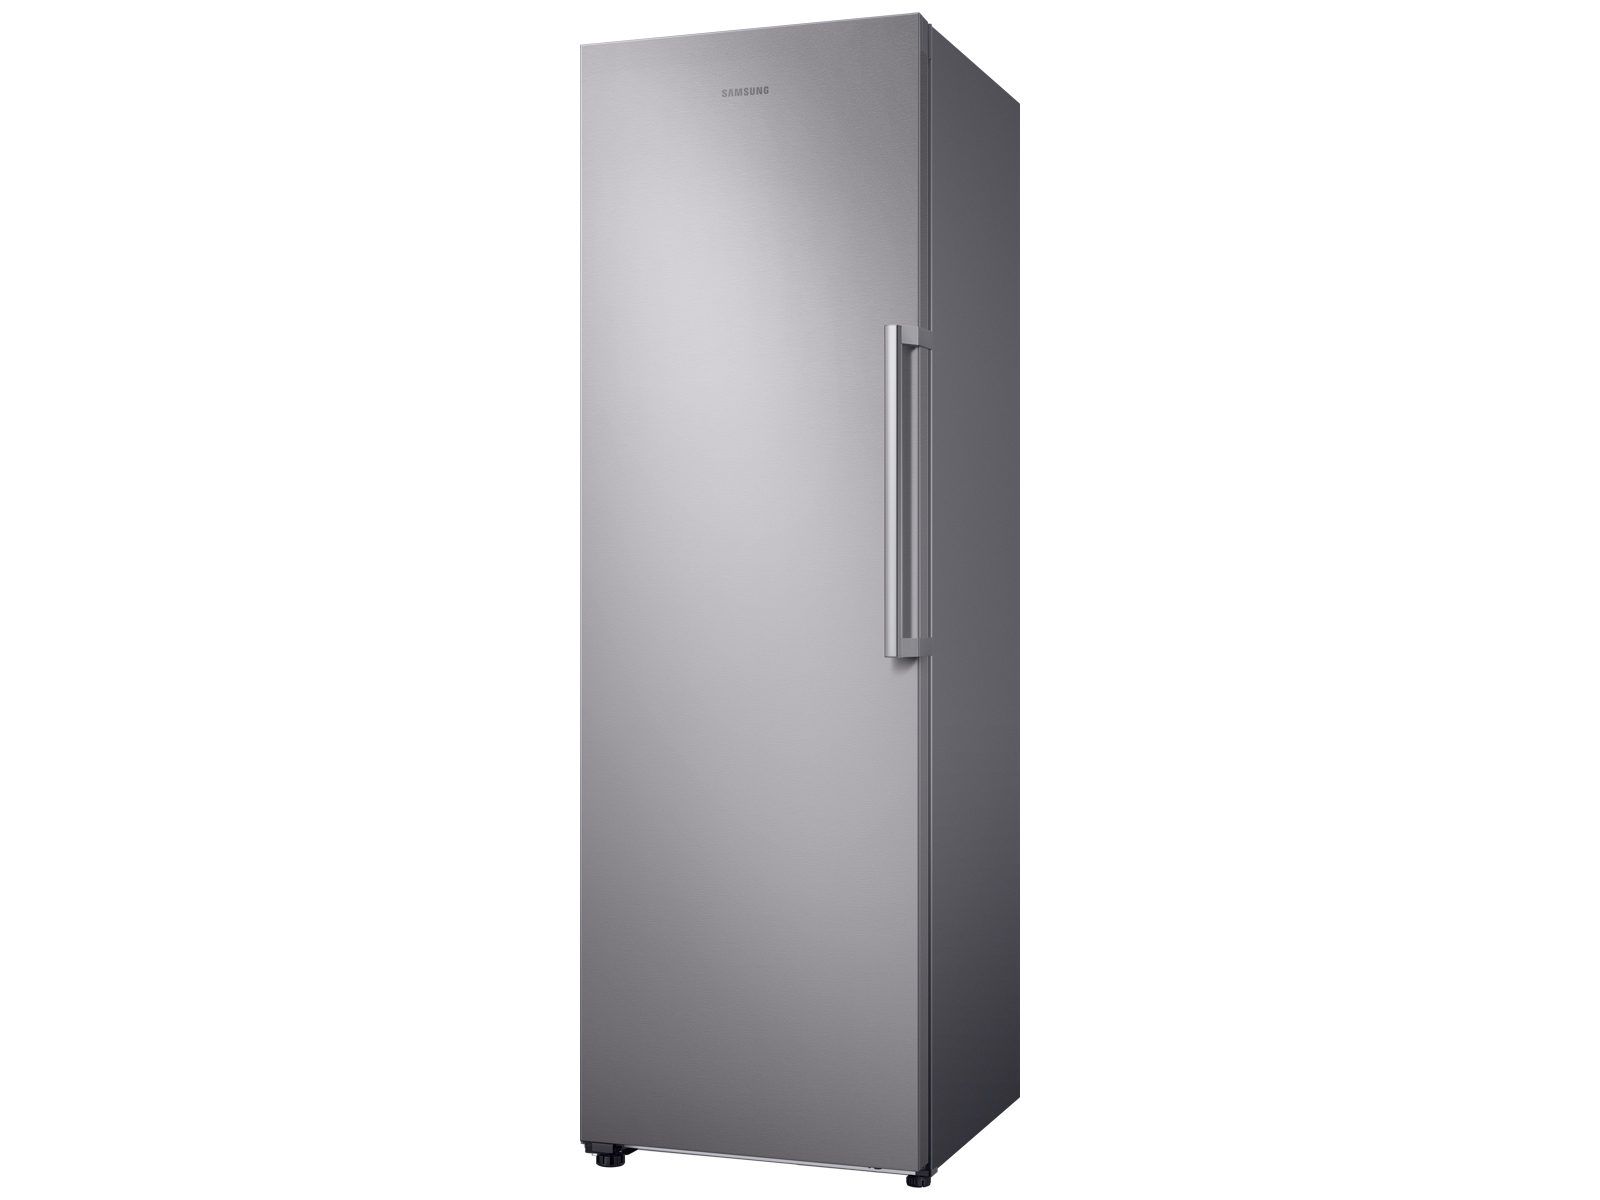 Congelador vertical con capacidad de 11.4 pies cúbicos con apariencia de acero inoxidable - RZ11M7074SA/AA | Samsung EE. UU.